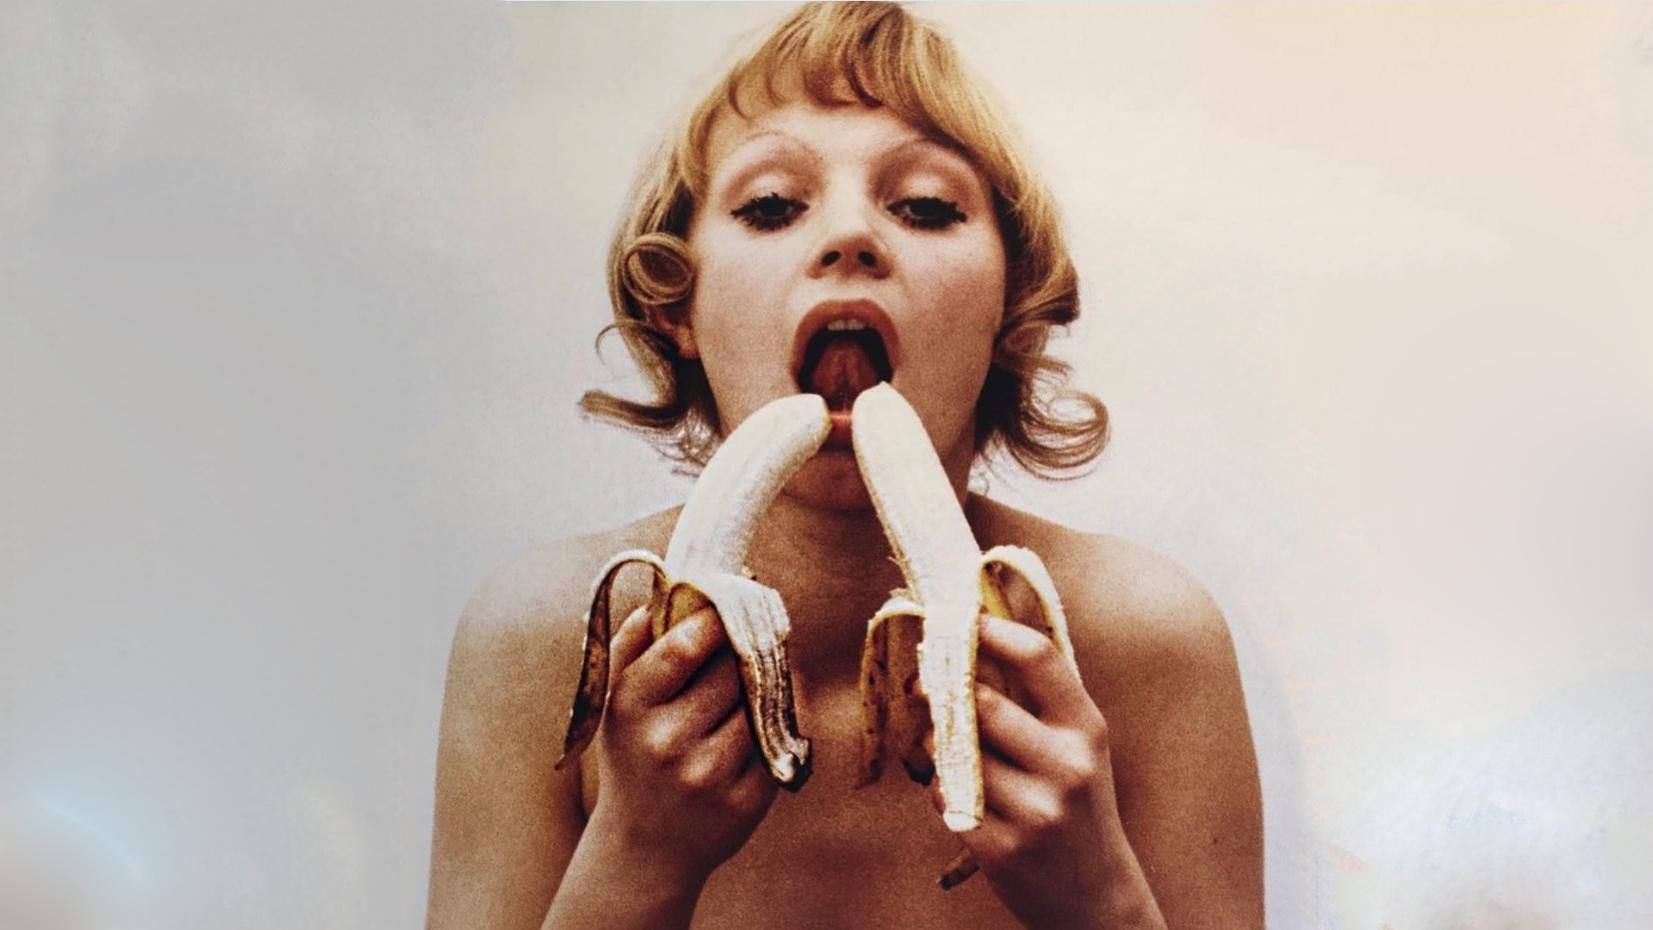 Всі їмо банани: у соцмережах запустили провокаційний флешмоб проти цензури у мистецтві